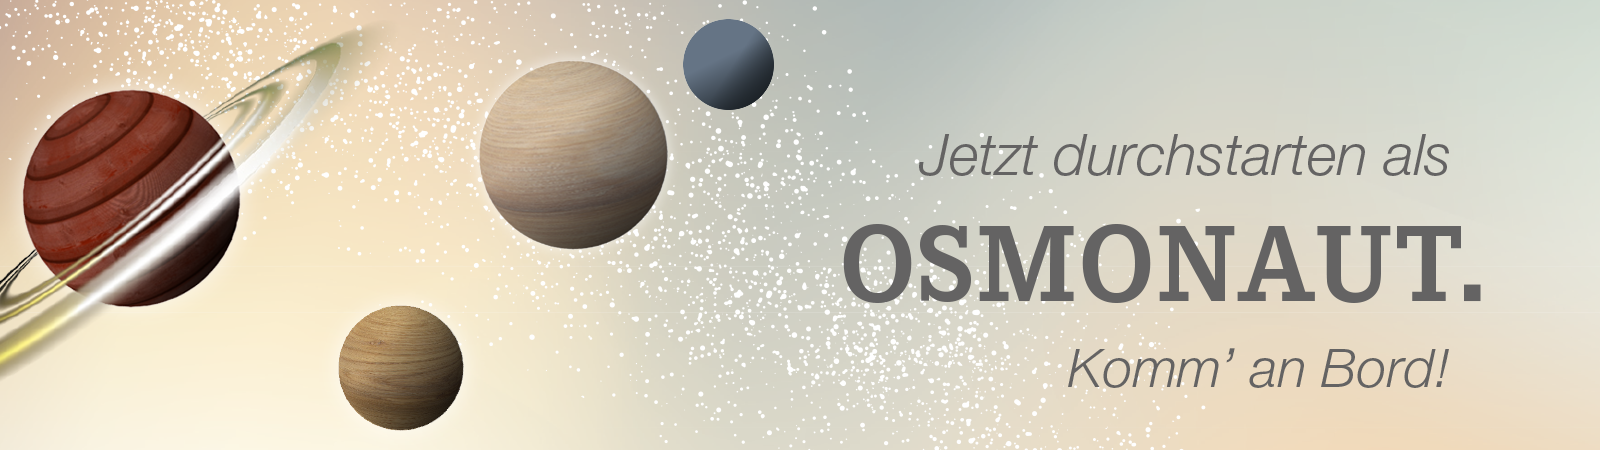 Werde Osmonaut bei Osmo und gestalte dir deine Zukunft als Industriekaufmann w/m/d